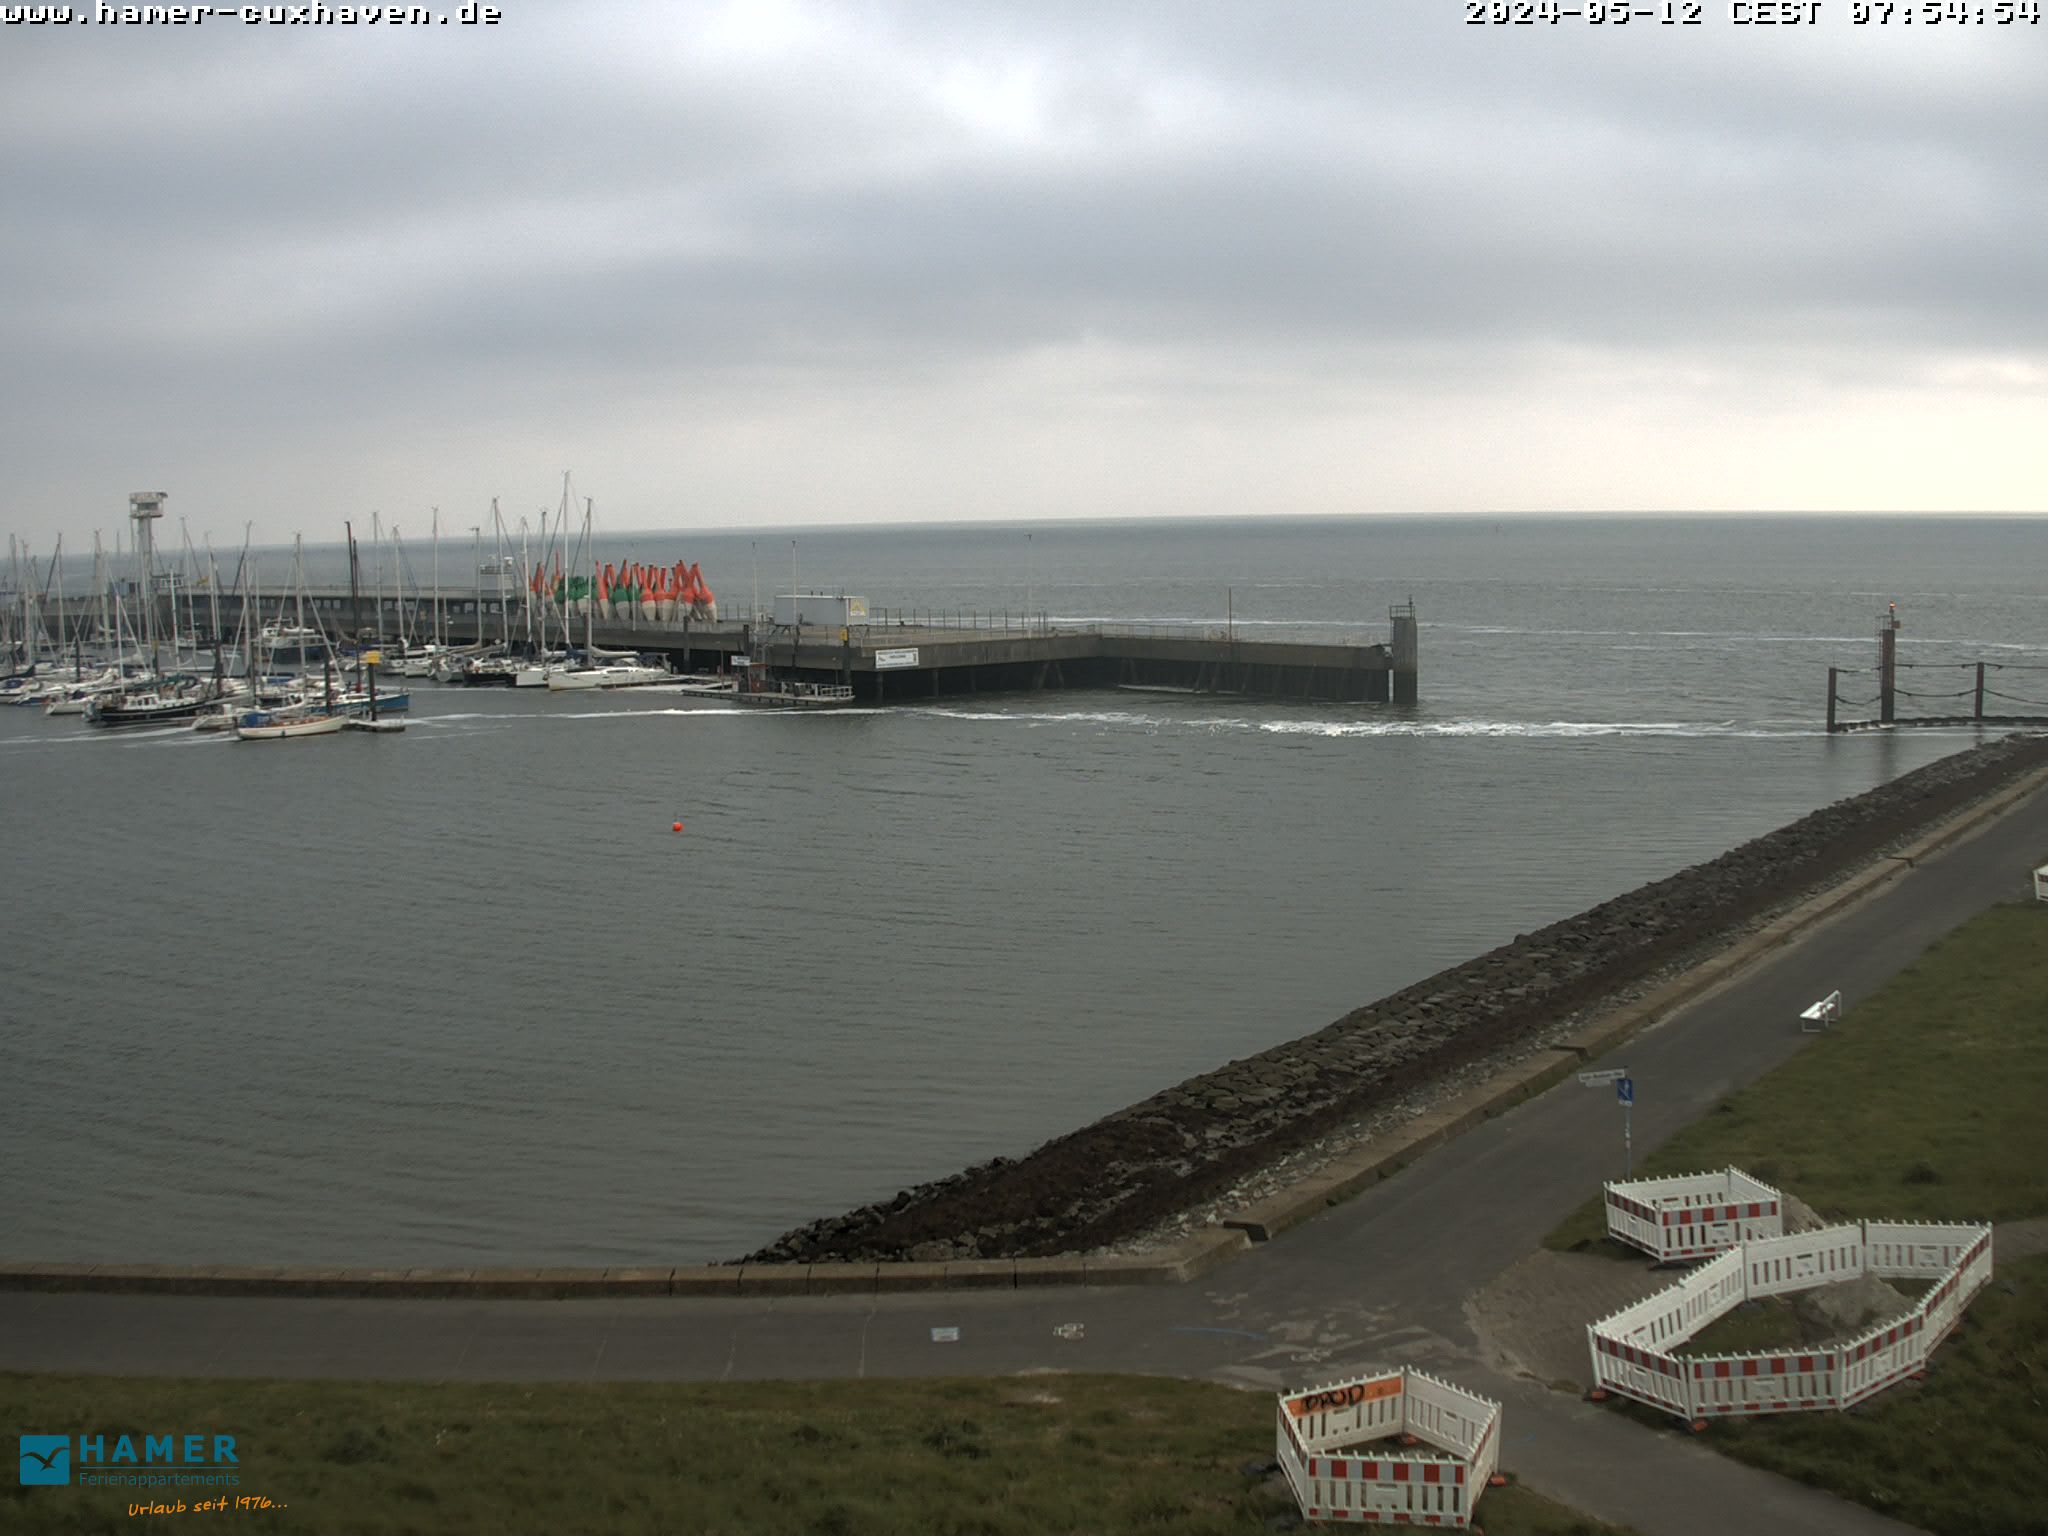 Cuxhaven Je. 07:55